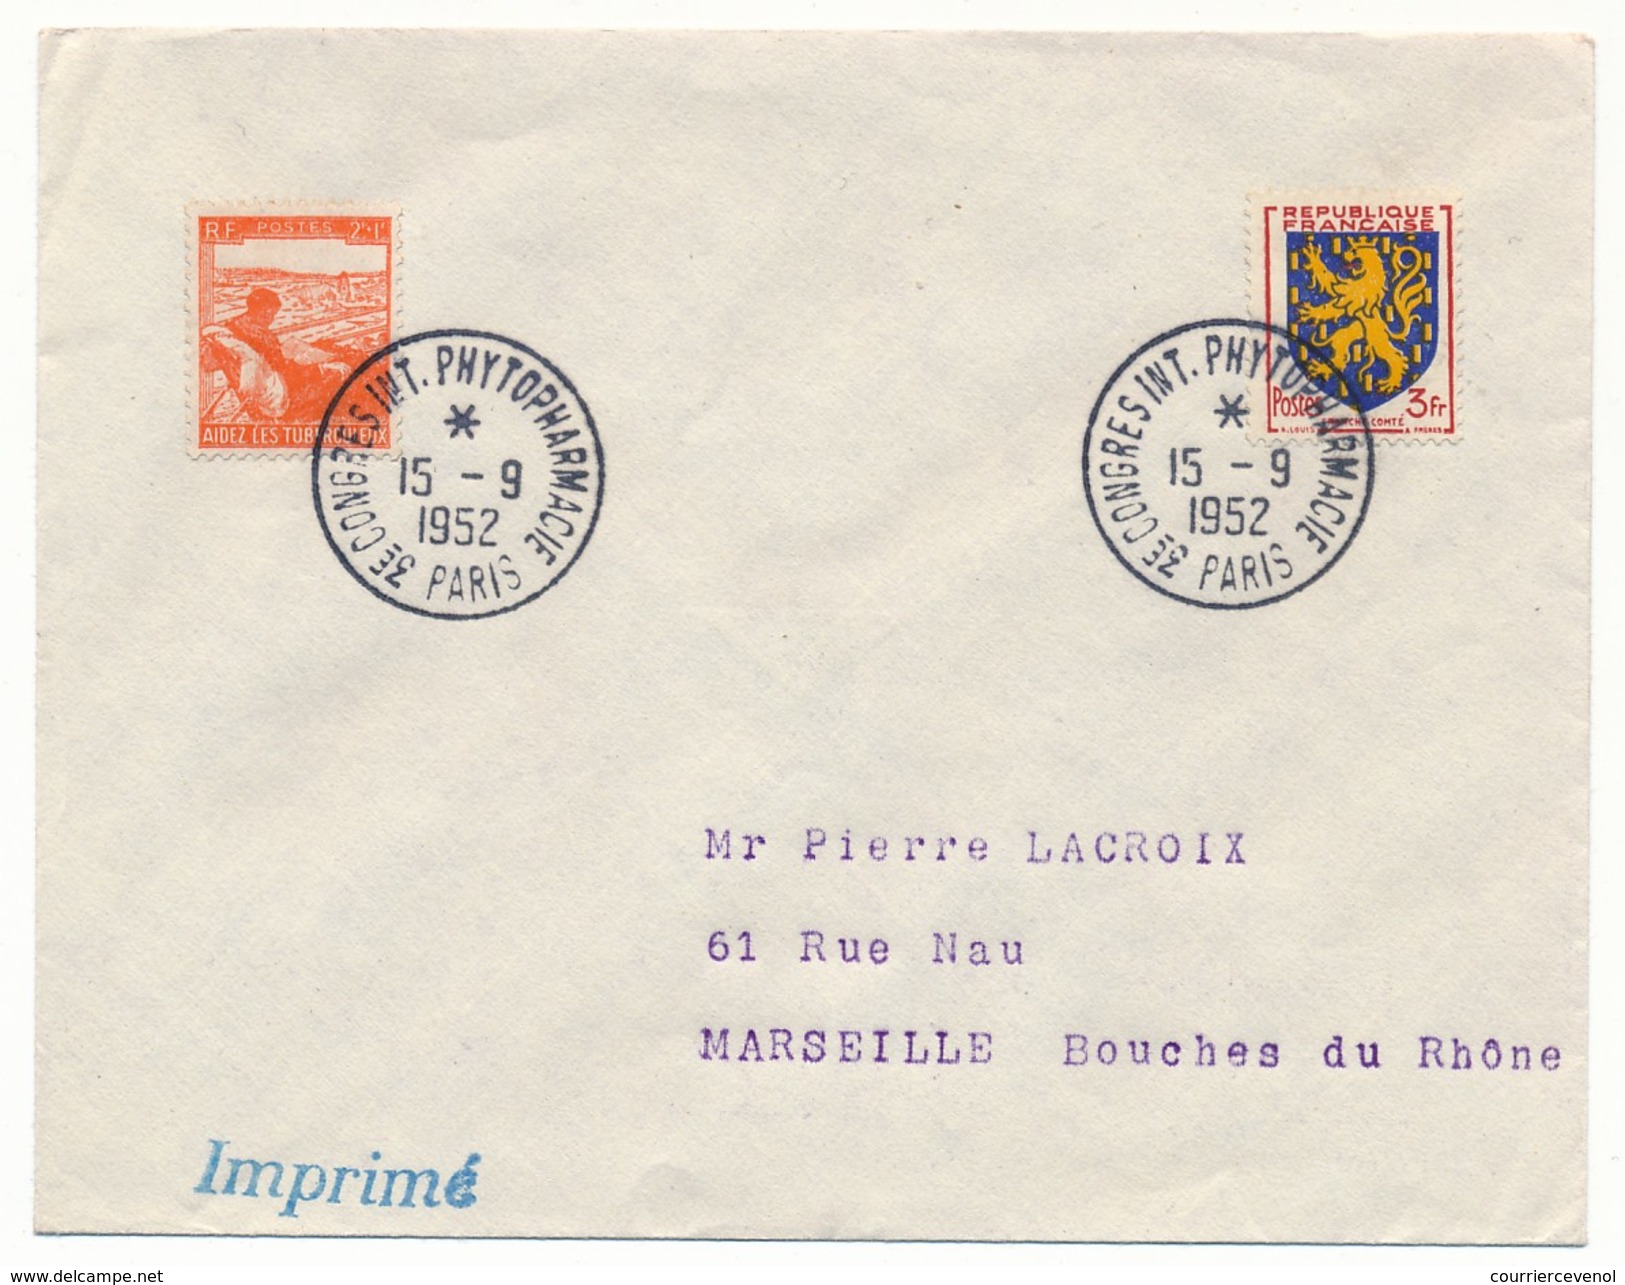 FRANCE => Env Scotem - Cachet Temporaire "3eme Congrès Int. Phytopharmacie" PARIS - 15/09/1952 - Cachets Commémoratifs